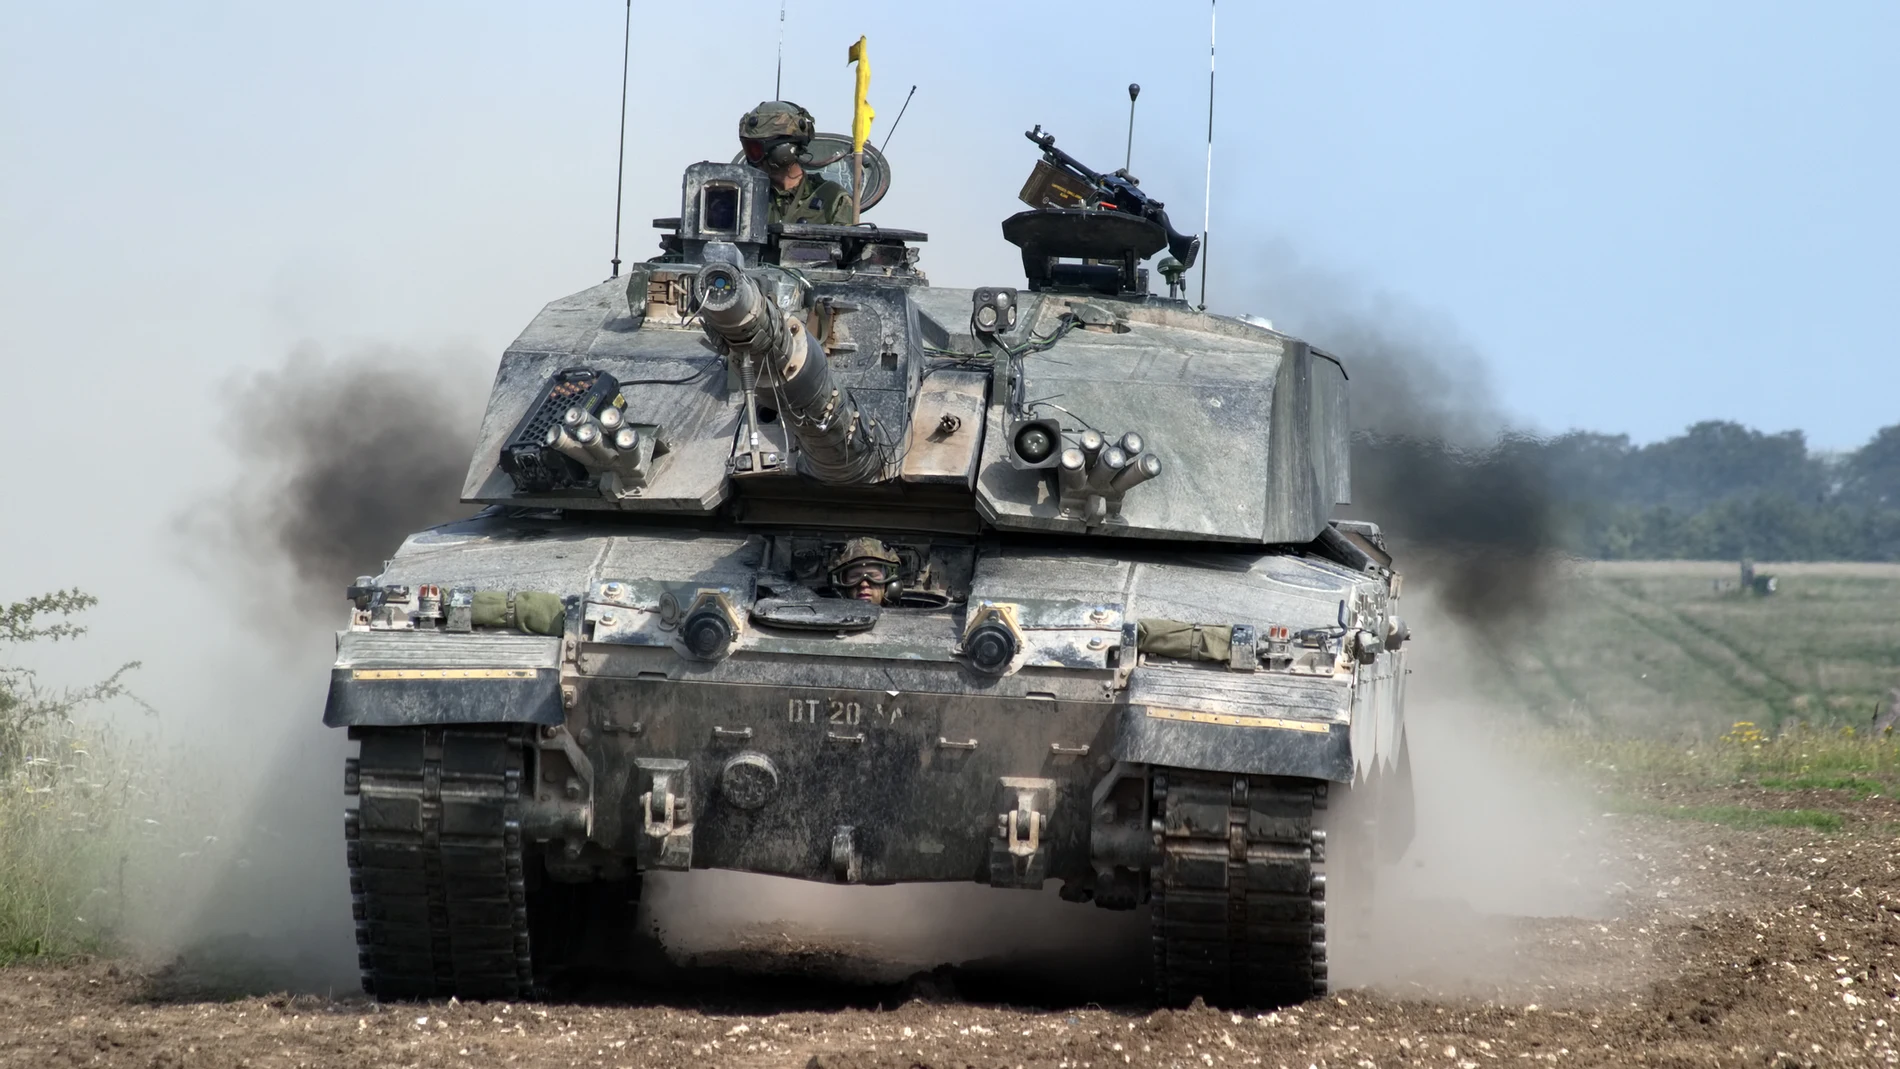 El Challenger 2 es el tanque de batalla principal del Ejército británico